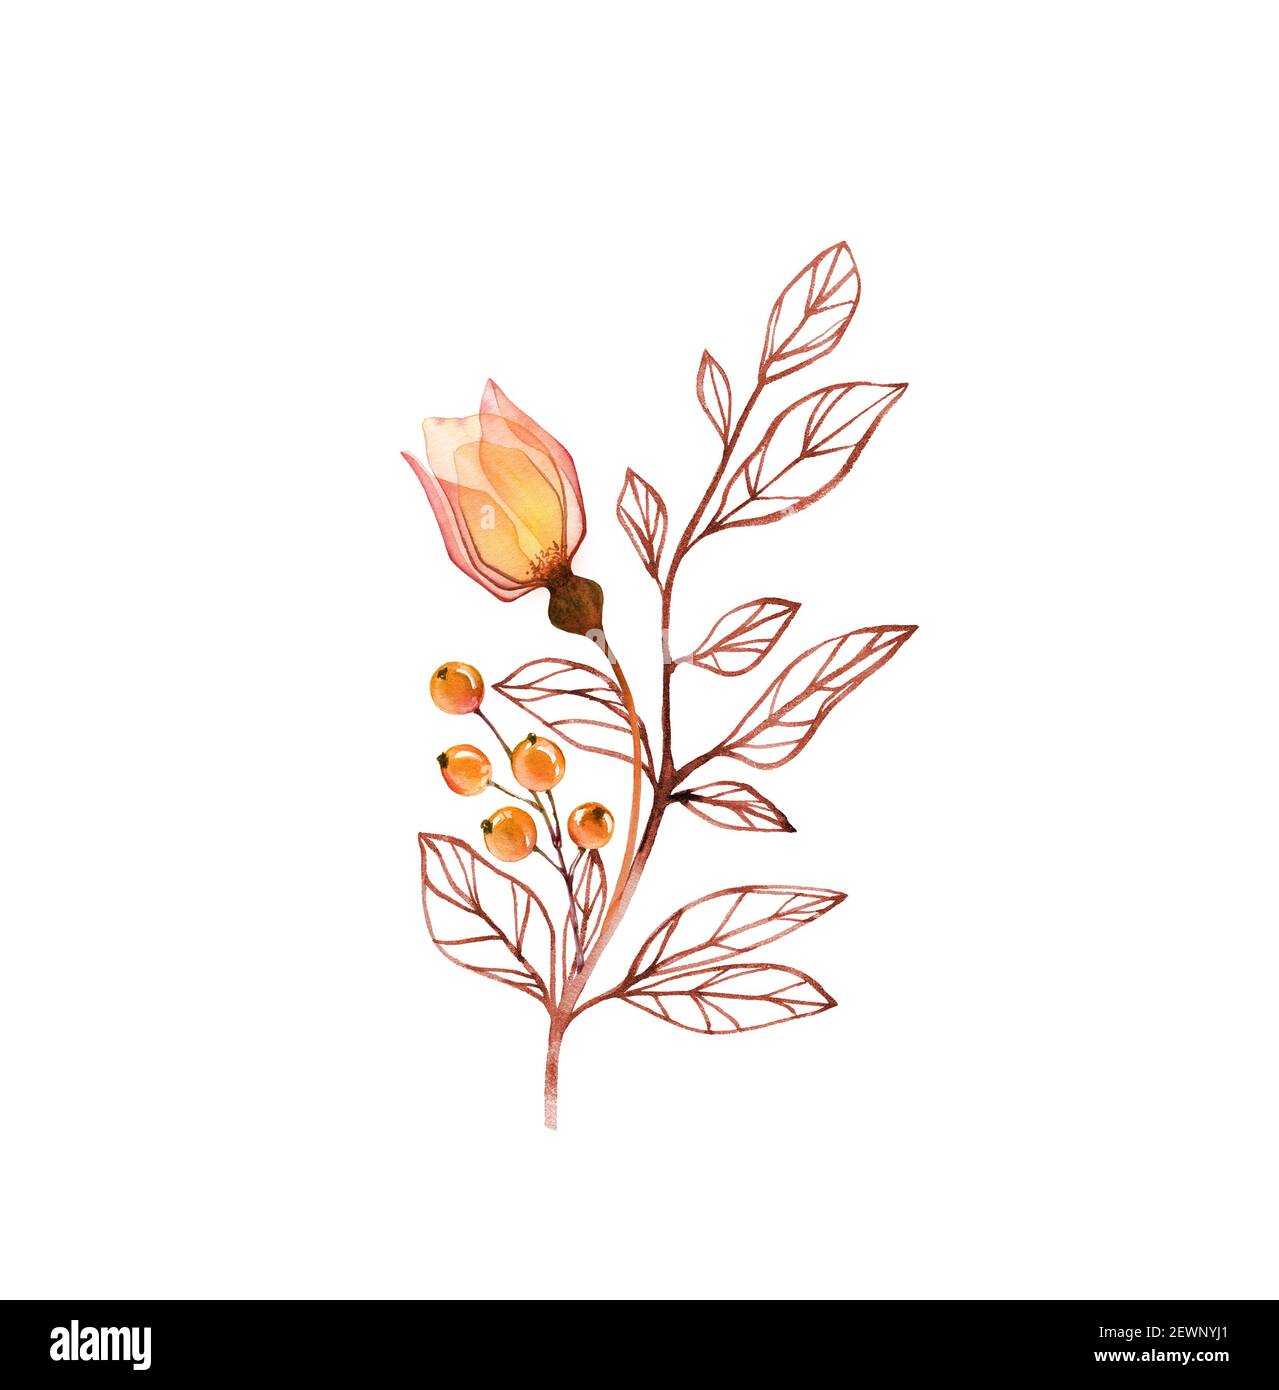 Aquarell Rose Pflanze. Transparente orange Blume mit Zweig und Beeren isoliert auf weiß. Handbemalte abstrakte Anordnung. Botanische Abbildung Stockfoto